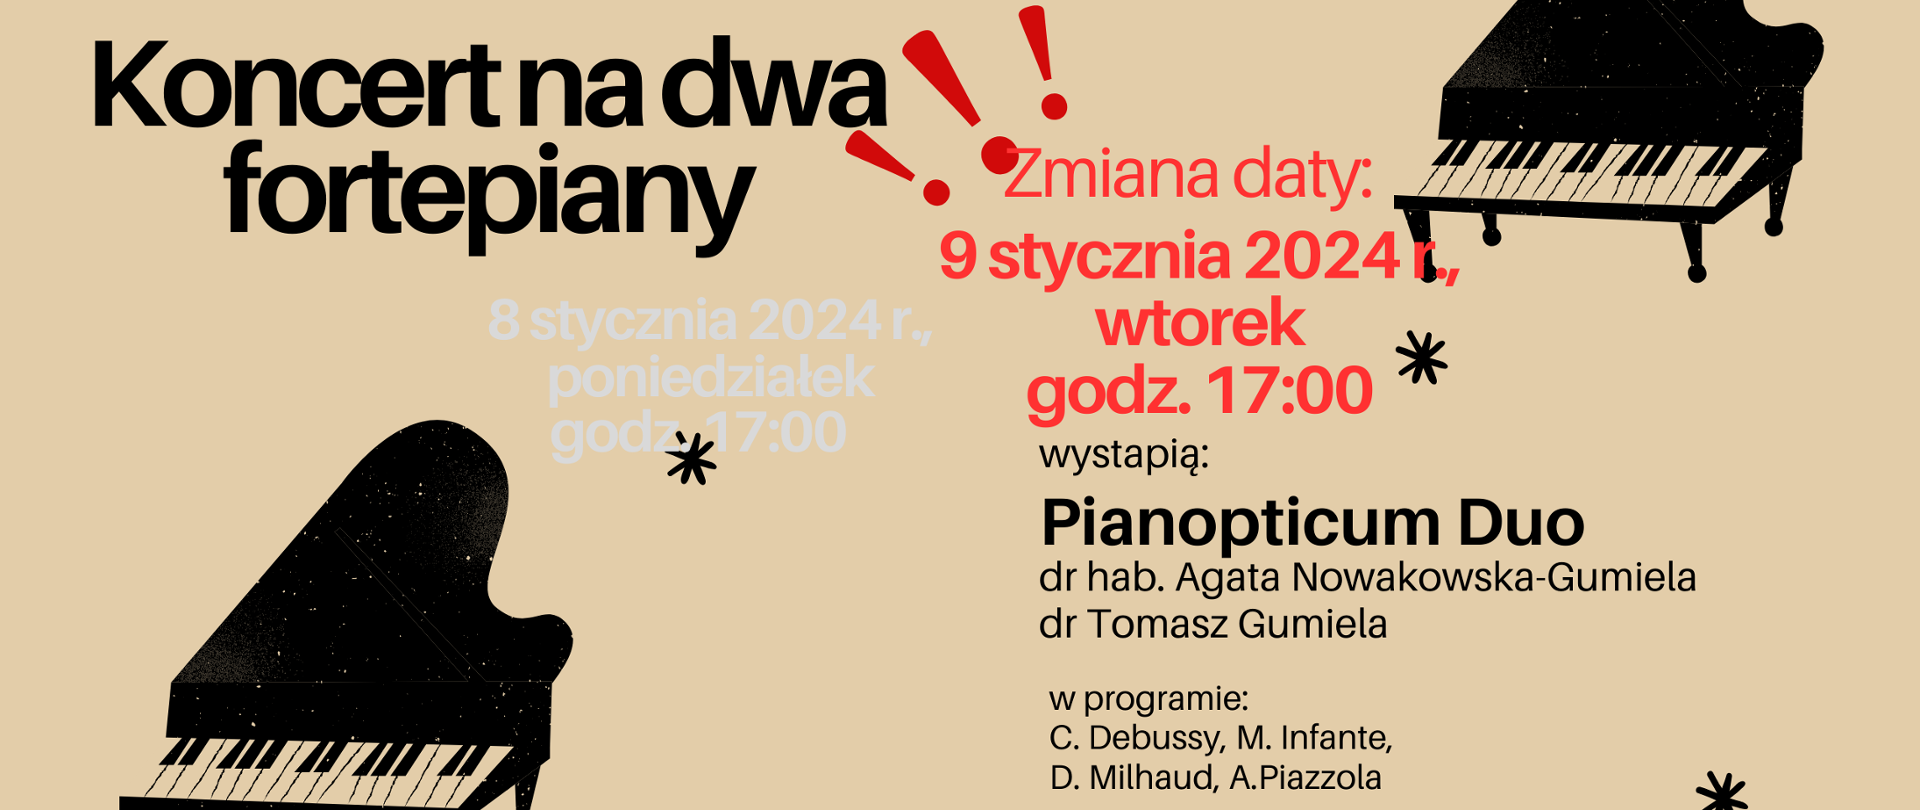 Plakat przedstawia informację o koncercie duetu fortepianowego, który odbędzie się 9 stycznia o godz. 17:00